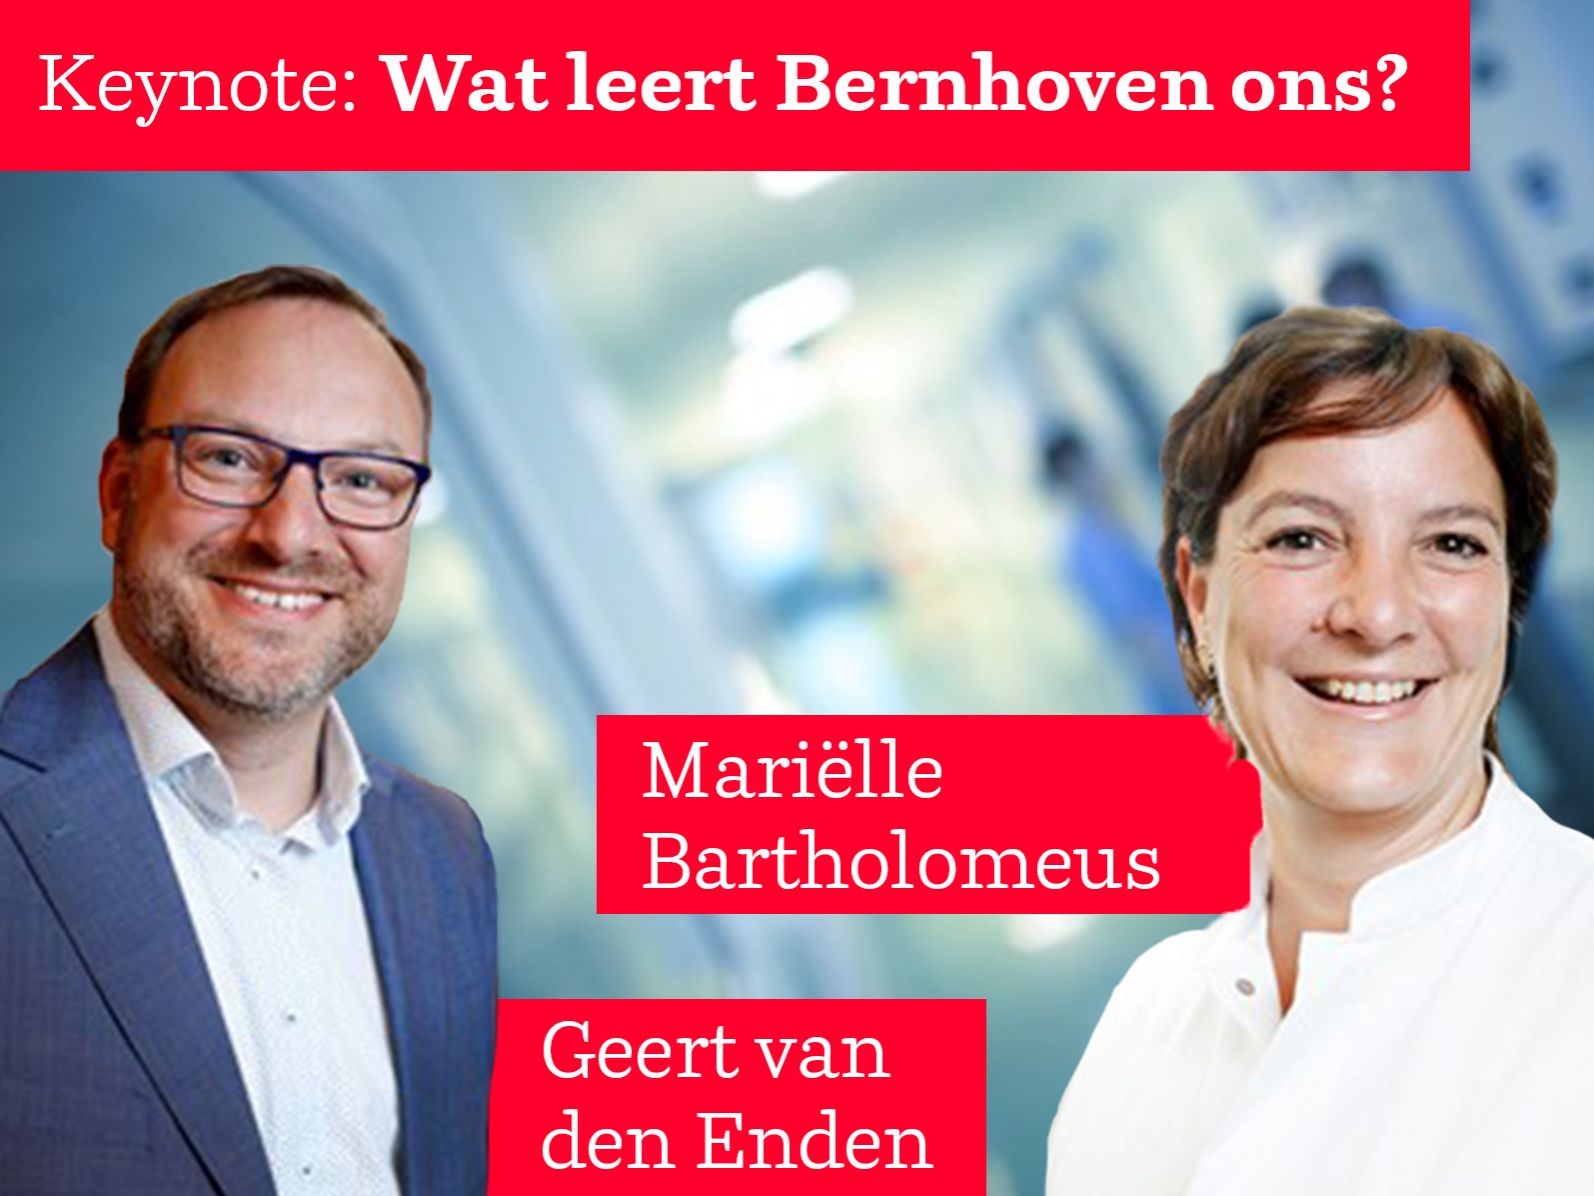 Keynote speakers Geert van den Enden en Mariëlle Bartholomeus